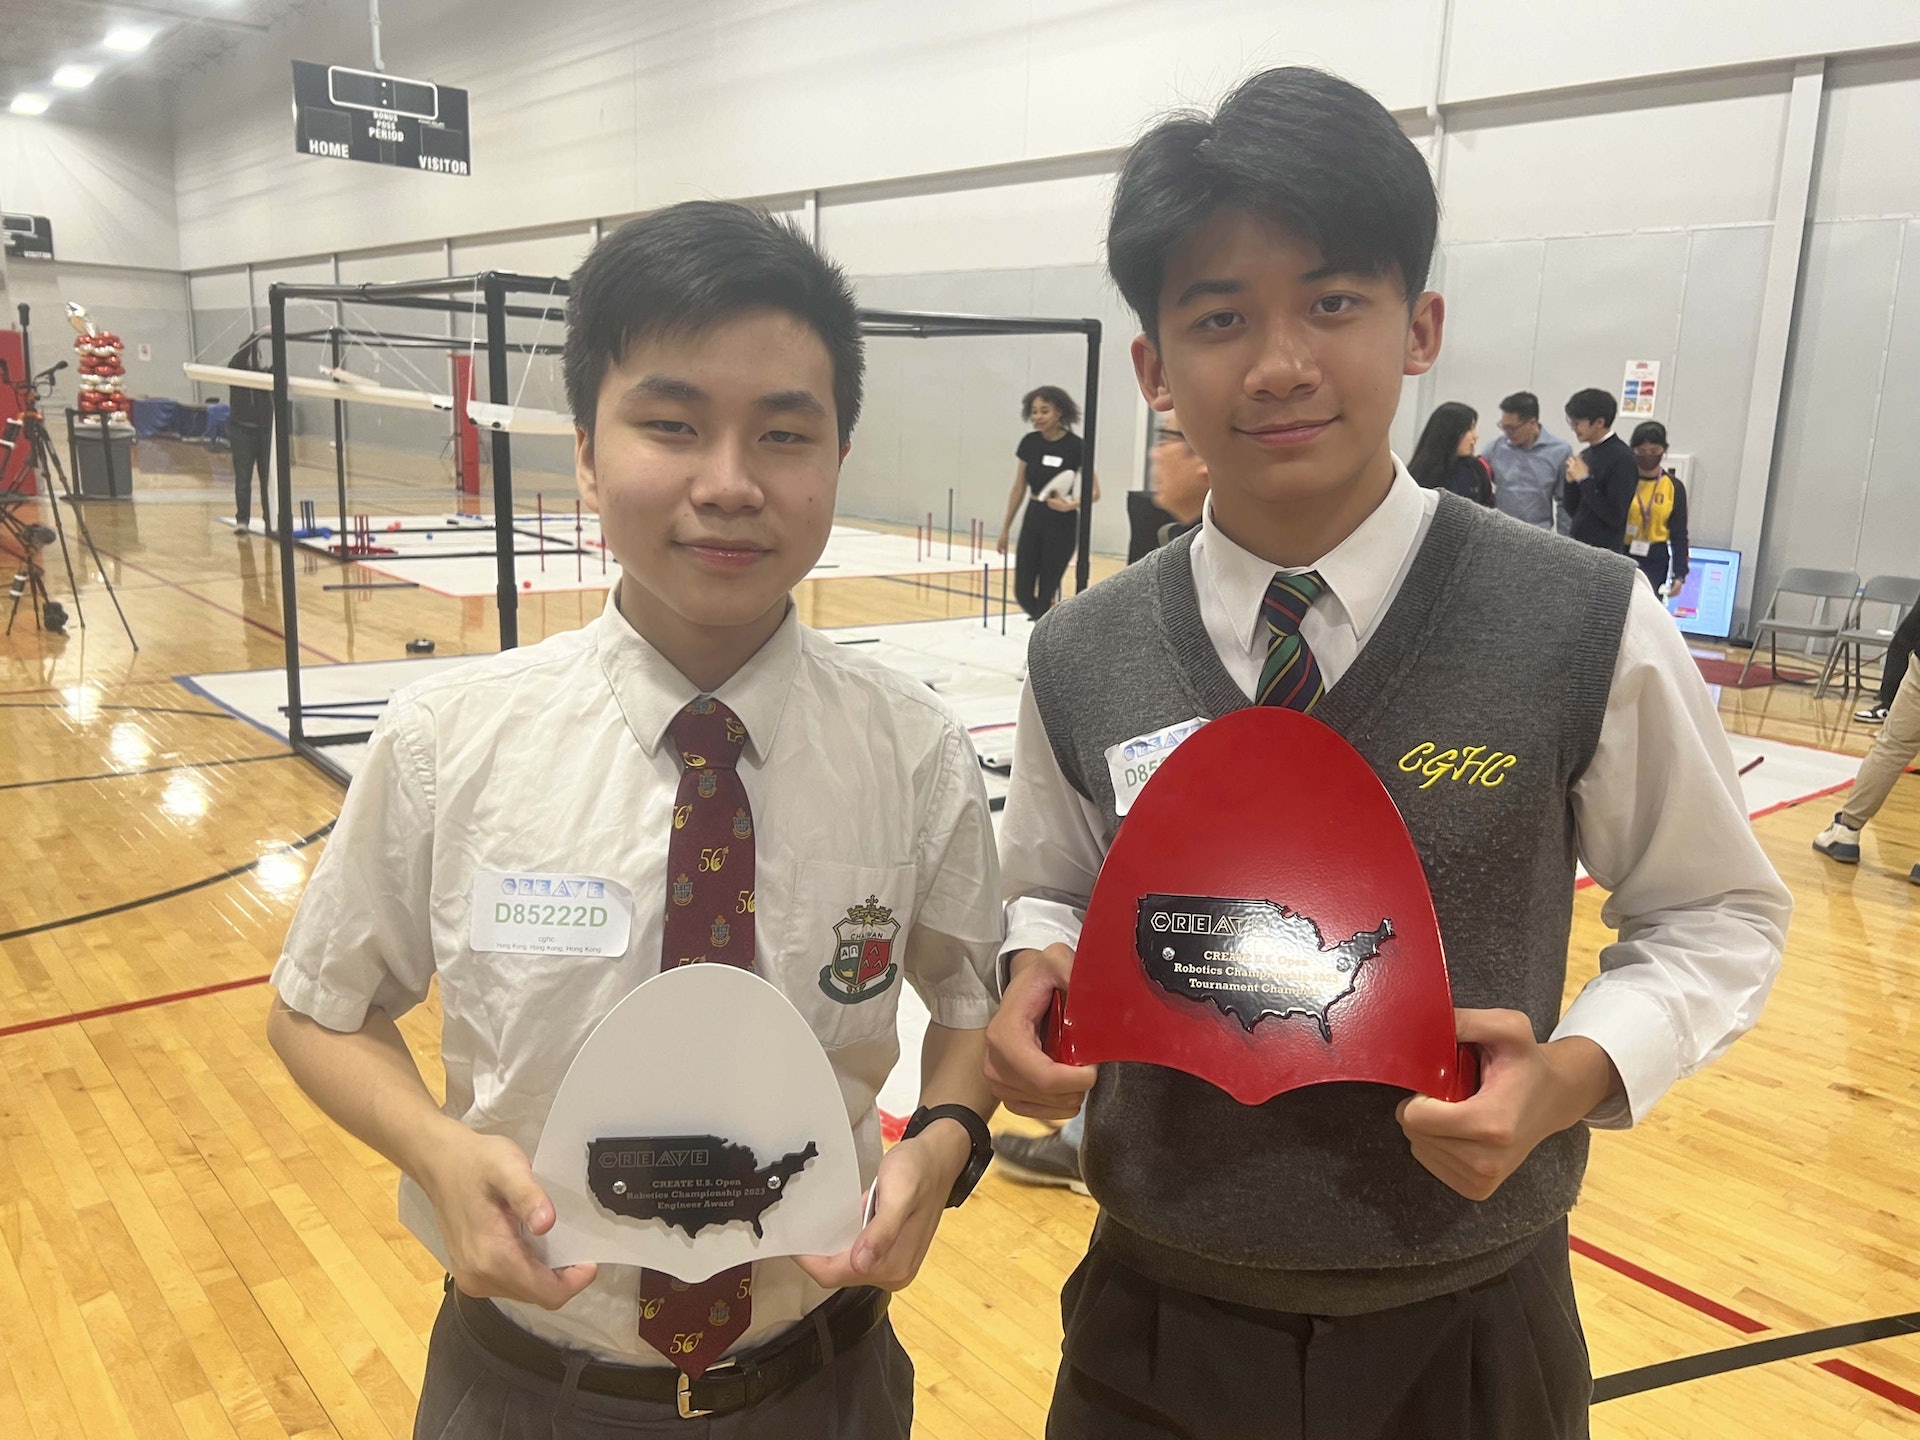 經過連日的比賽，該校兩位學生(左：梁偉恒; 右：李文碩) 成功在賽事中獲得 “Engineer Award” (見註1)及 “Tournament Champion” (見註2)。